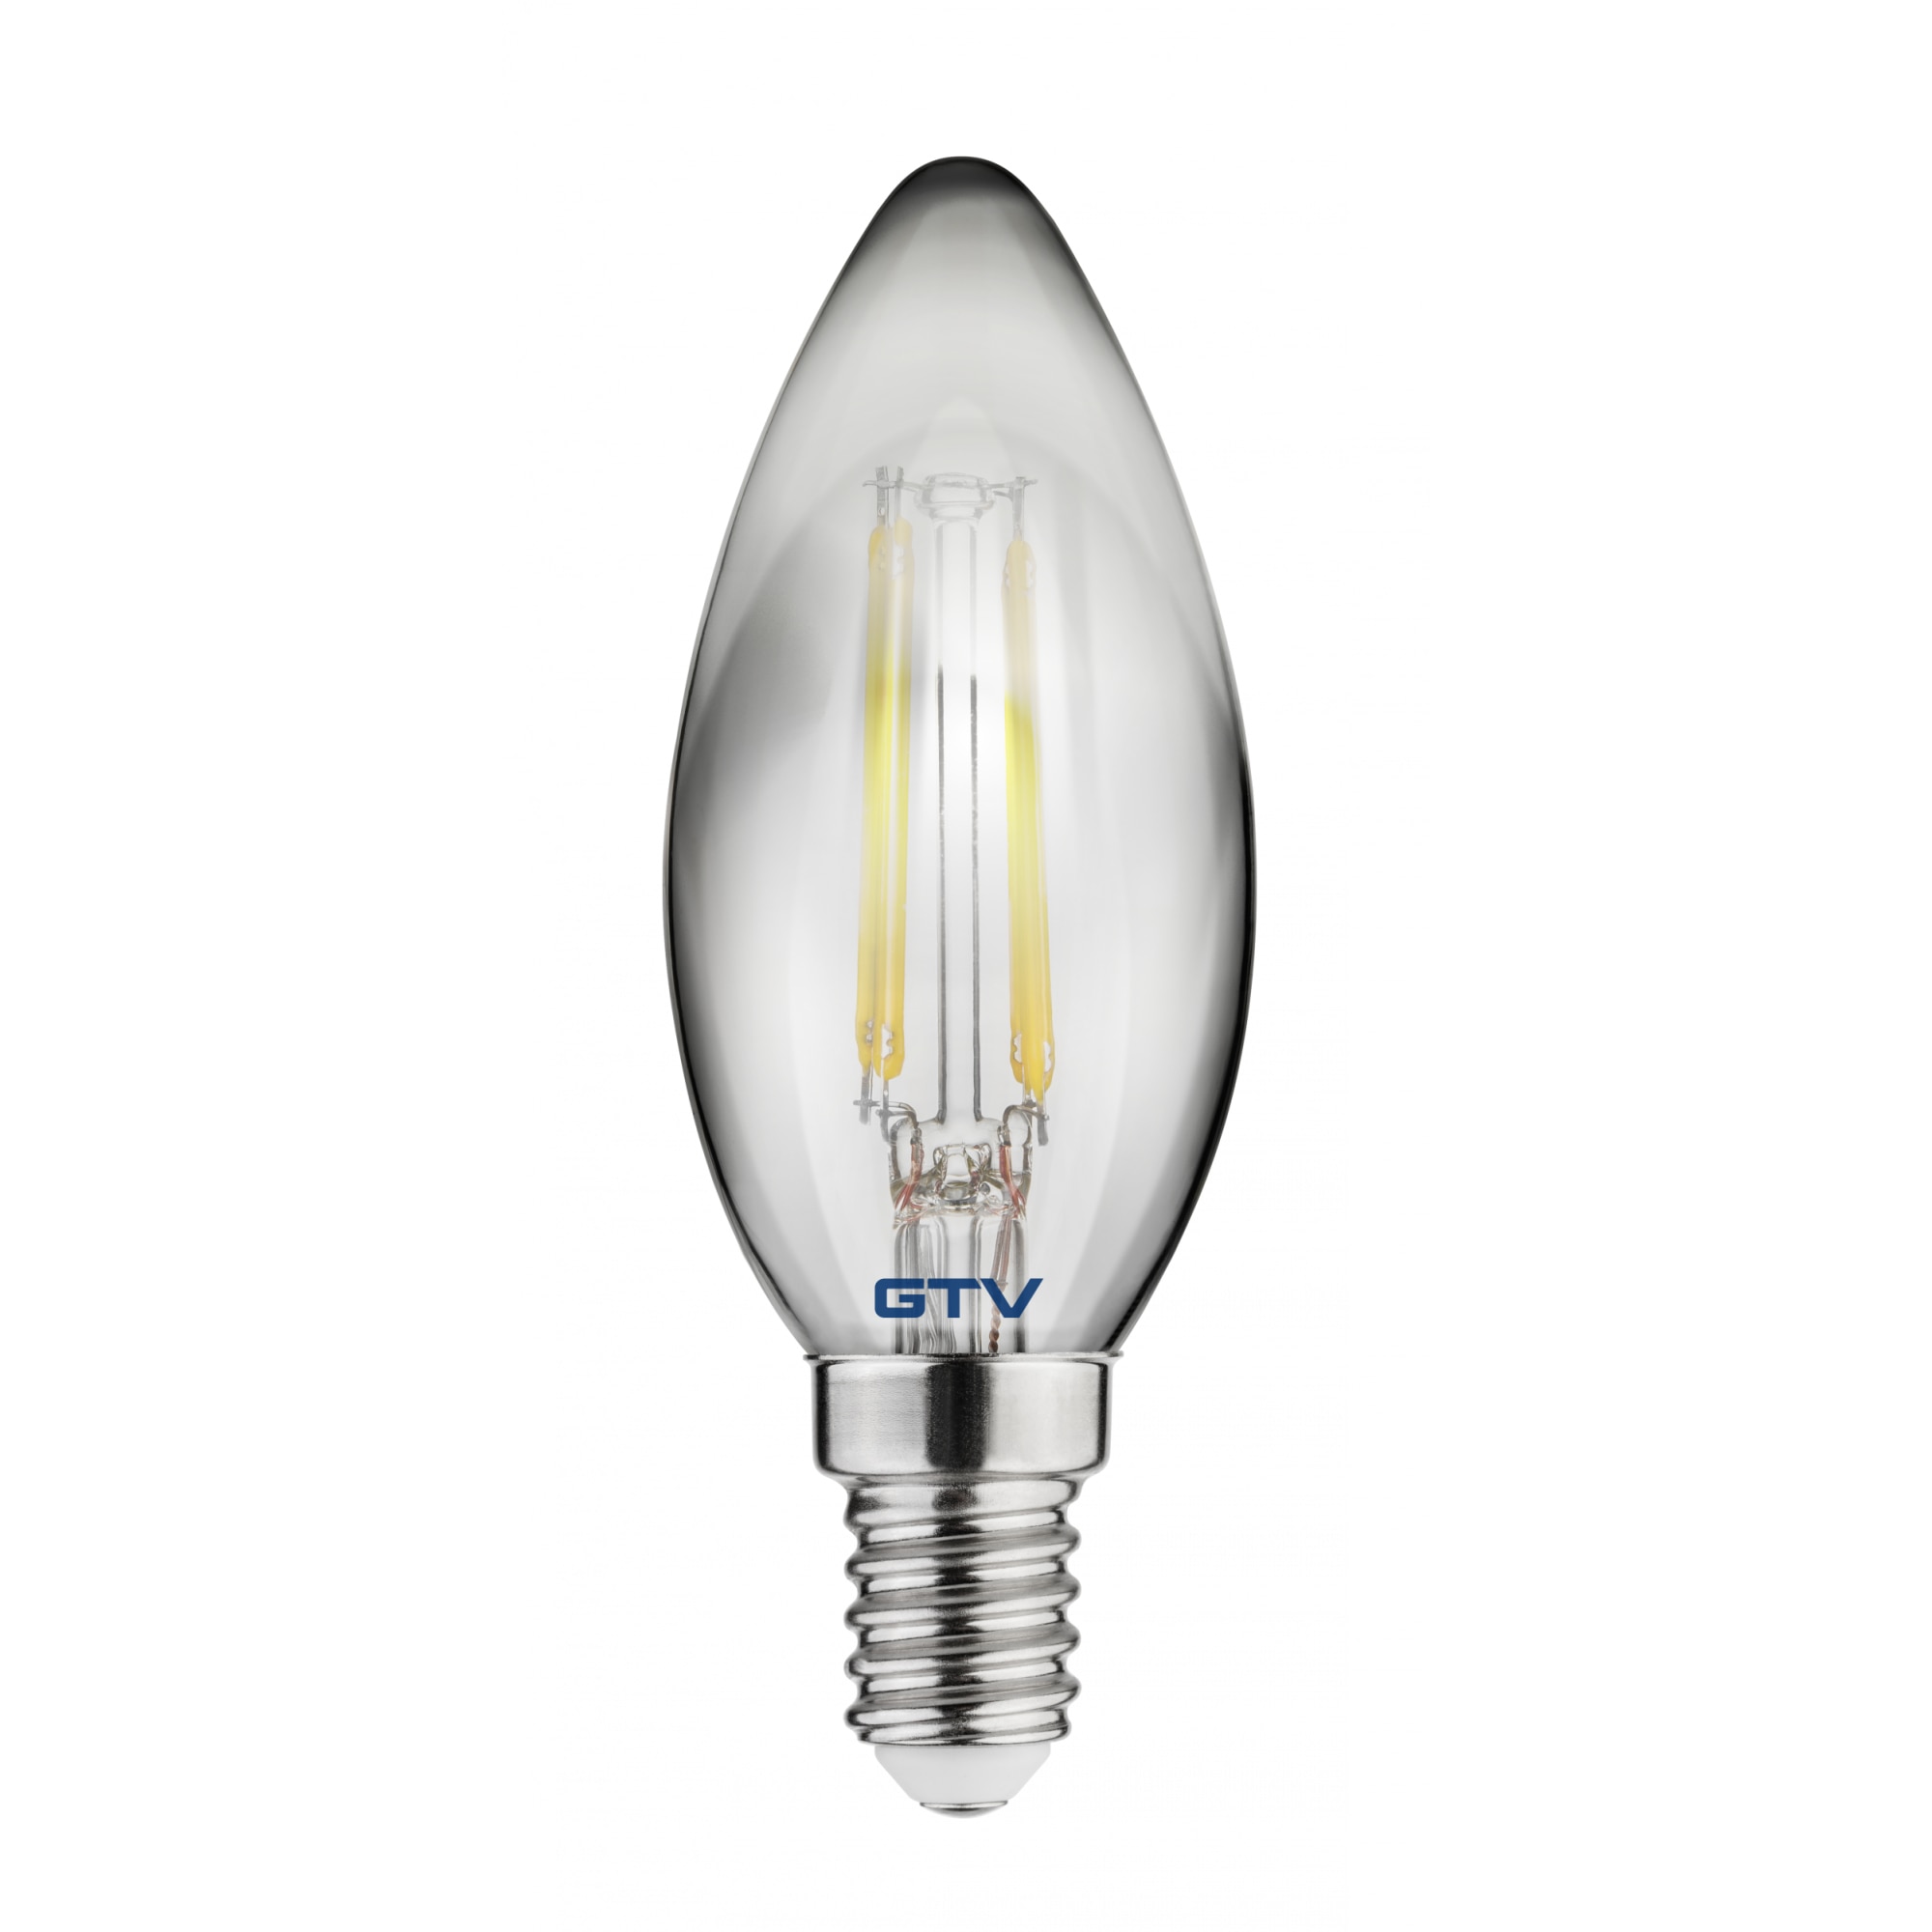 2x MINI LED žárovka E14 2,8W 2700K Filament OSRAM za 185 Kč - Allegro